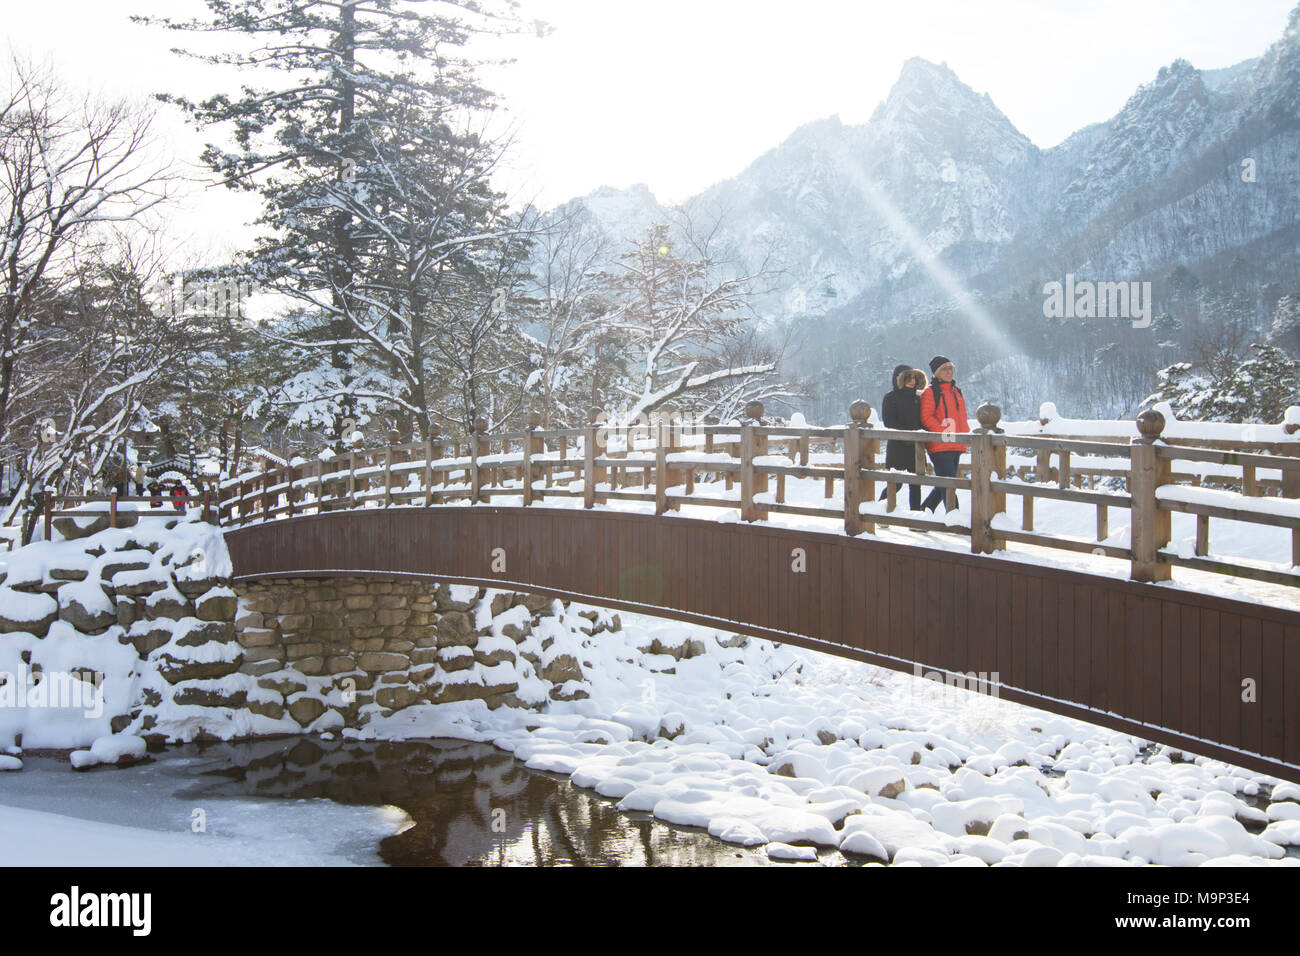 Un homme et une femme marchent sur un pont de bois dans le Parc National de Seoraksan, Gangwon-do, Corée du Sud. Seoraksan est une belle et célèbre parc national dans les montagnes près de Cavaillon dans la région du Gangwon-do en Corée du Sud. Le nom fait référence à Snowy Mountains Crags. Situé dans le paysage sont deux temples Bouddhistes : Sinheung-sa et Beakdam-sa. Cette région accueille les Jeux Olympiques d'hiver en février 2018. Banque D'Images